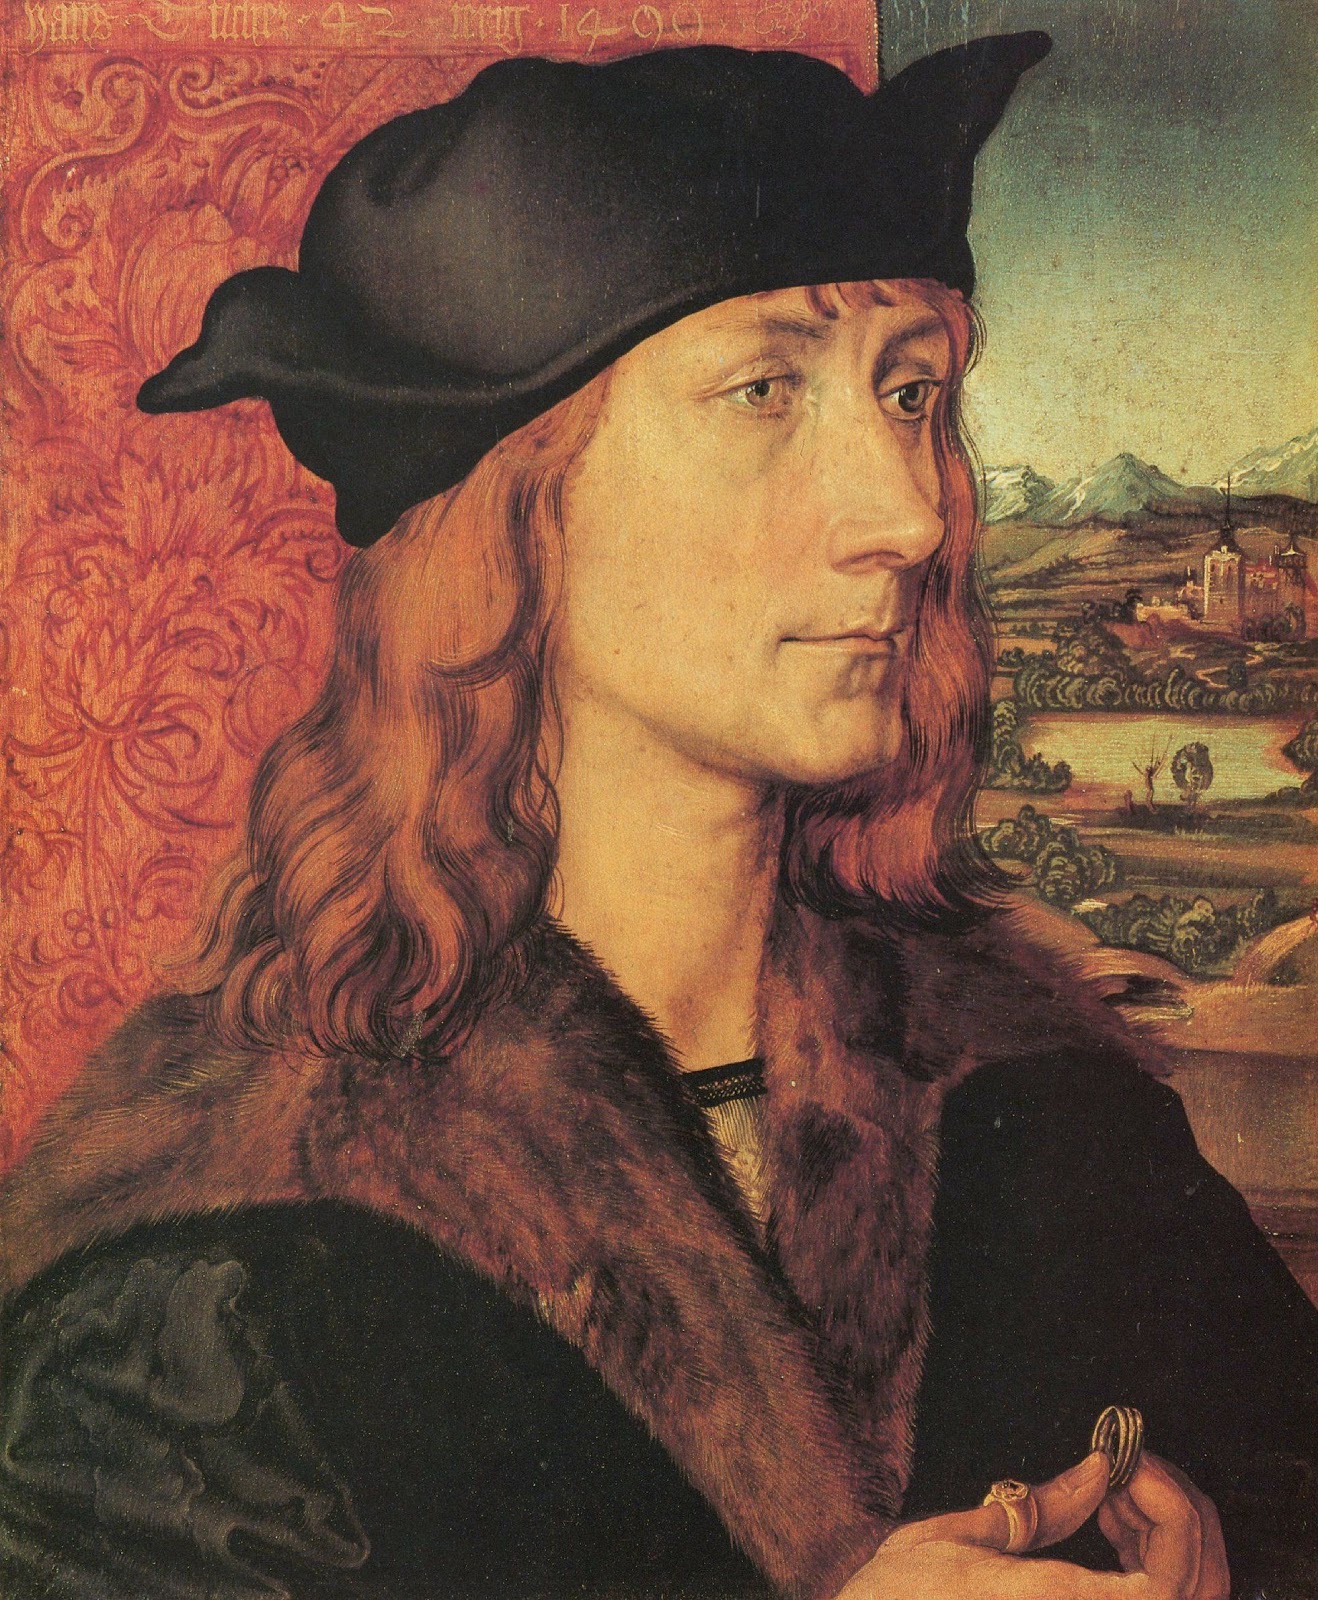 Albrecht+Durer-1471-1528 (91).jpg